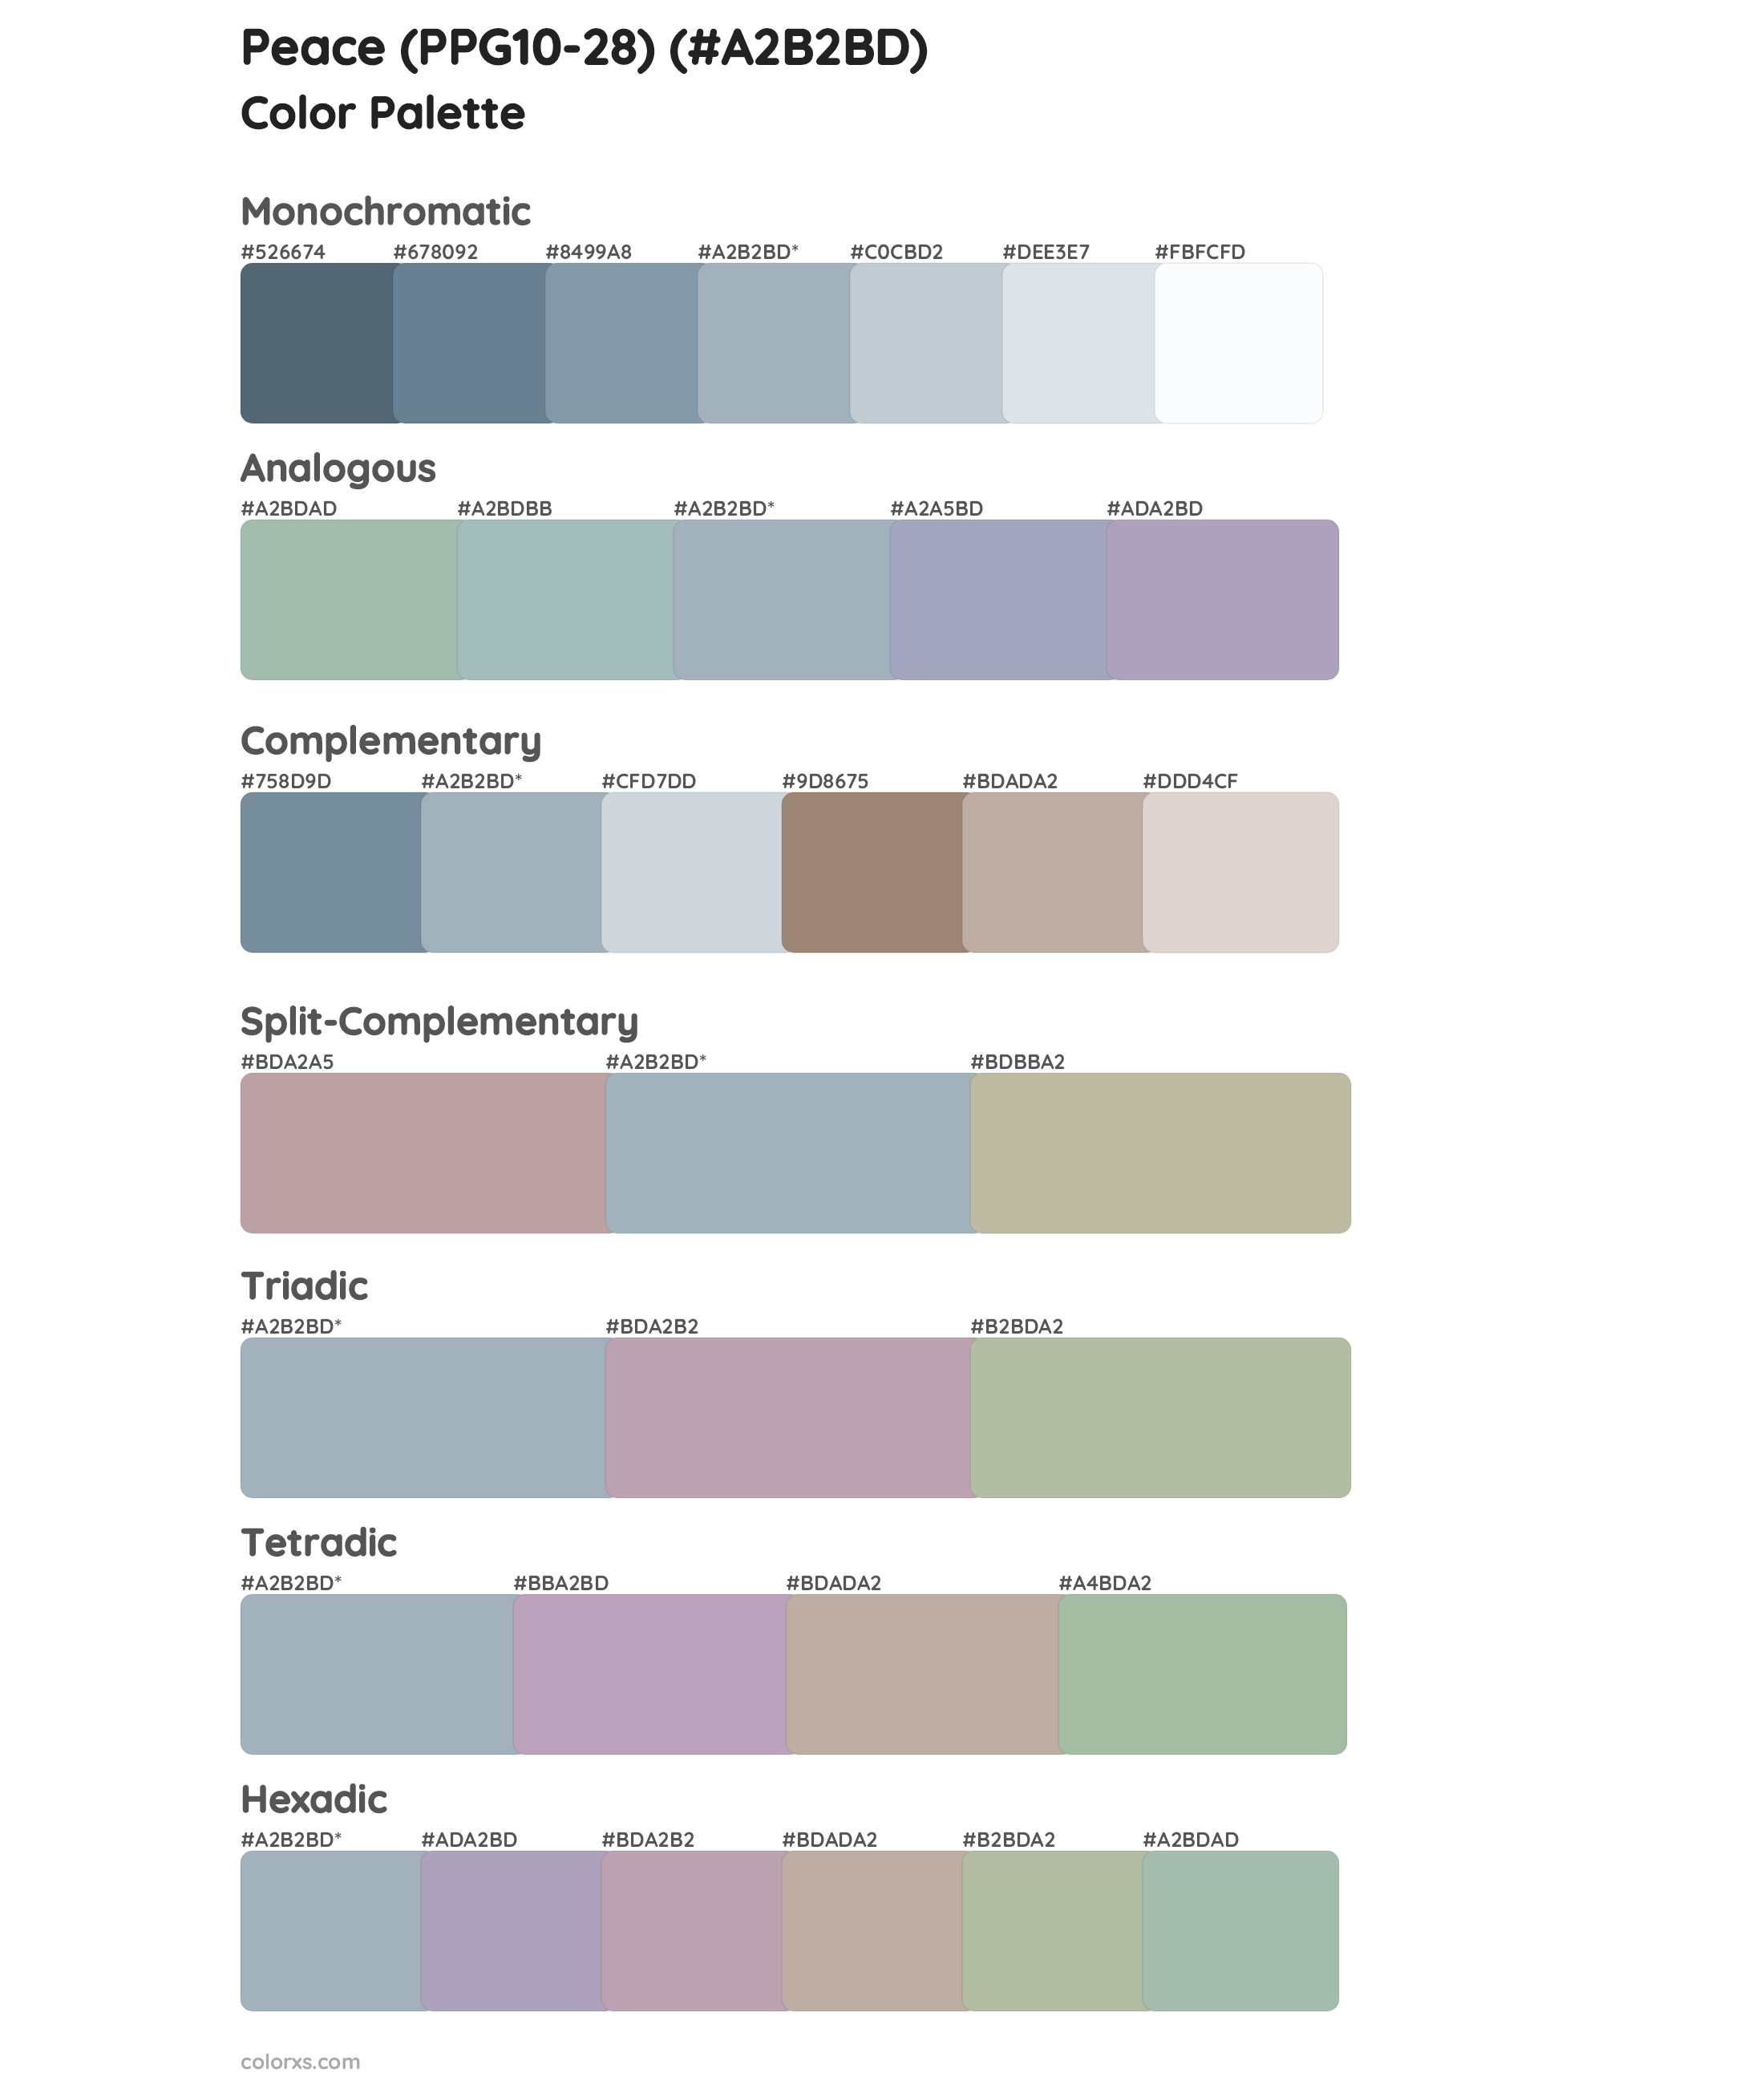 Peace (PPG10-28) Color Scheme Palettes